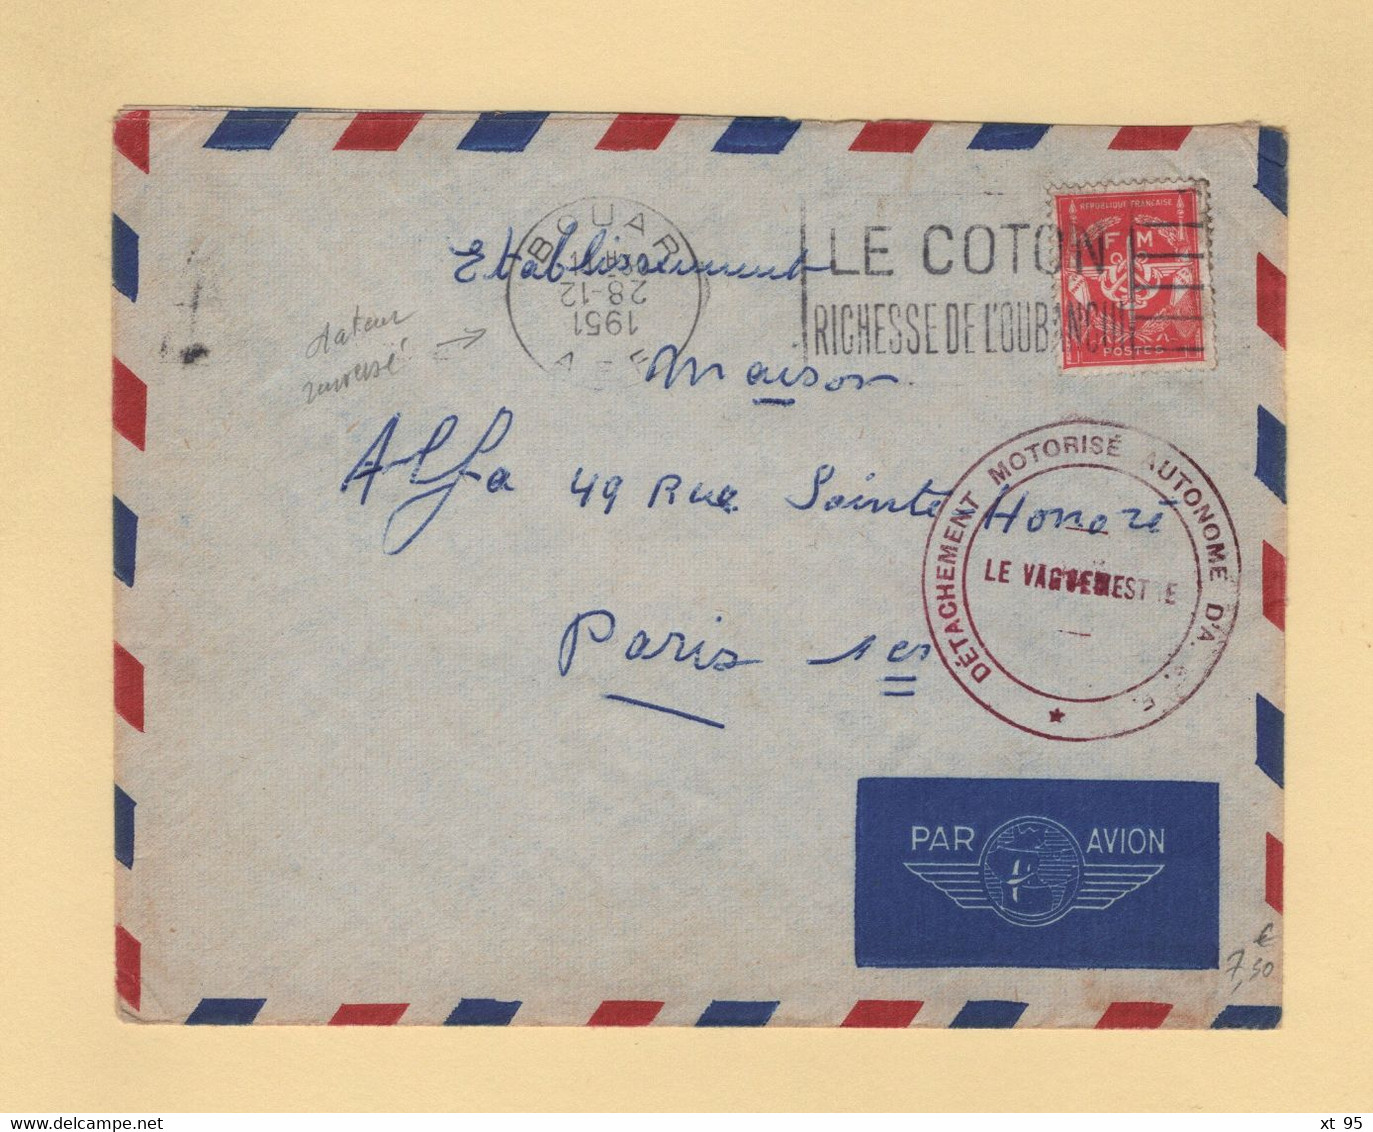 Timbre FM - AEF - Bouar - 1951 - Detachement Motorise Autonome D AEF - Military Postage Stamps